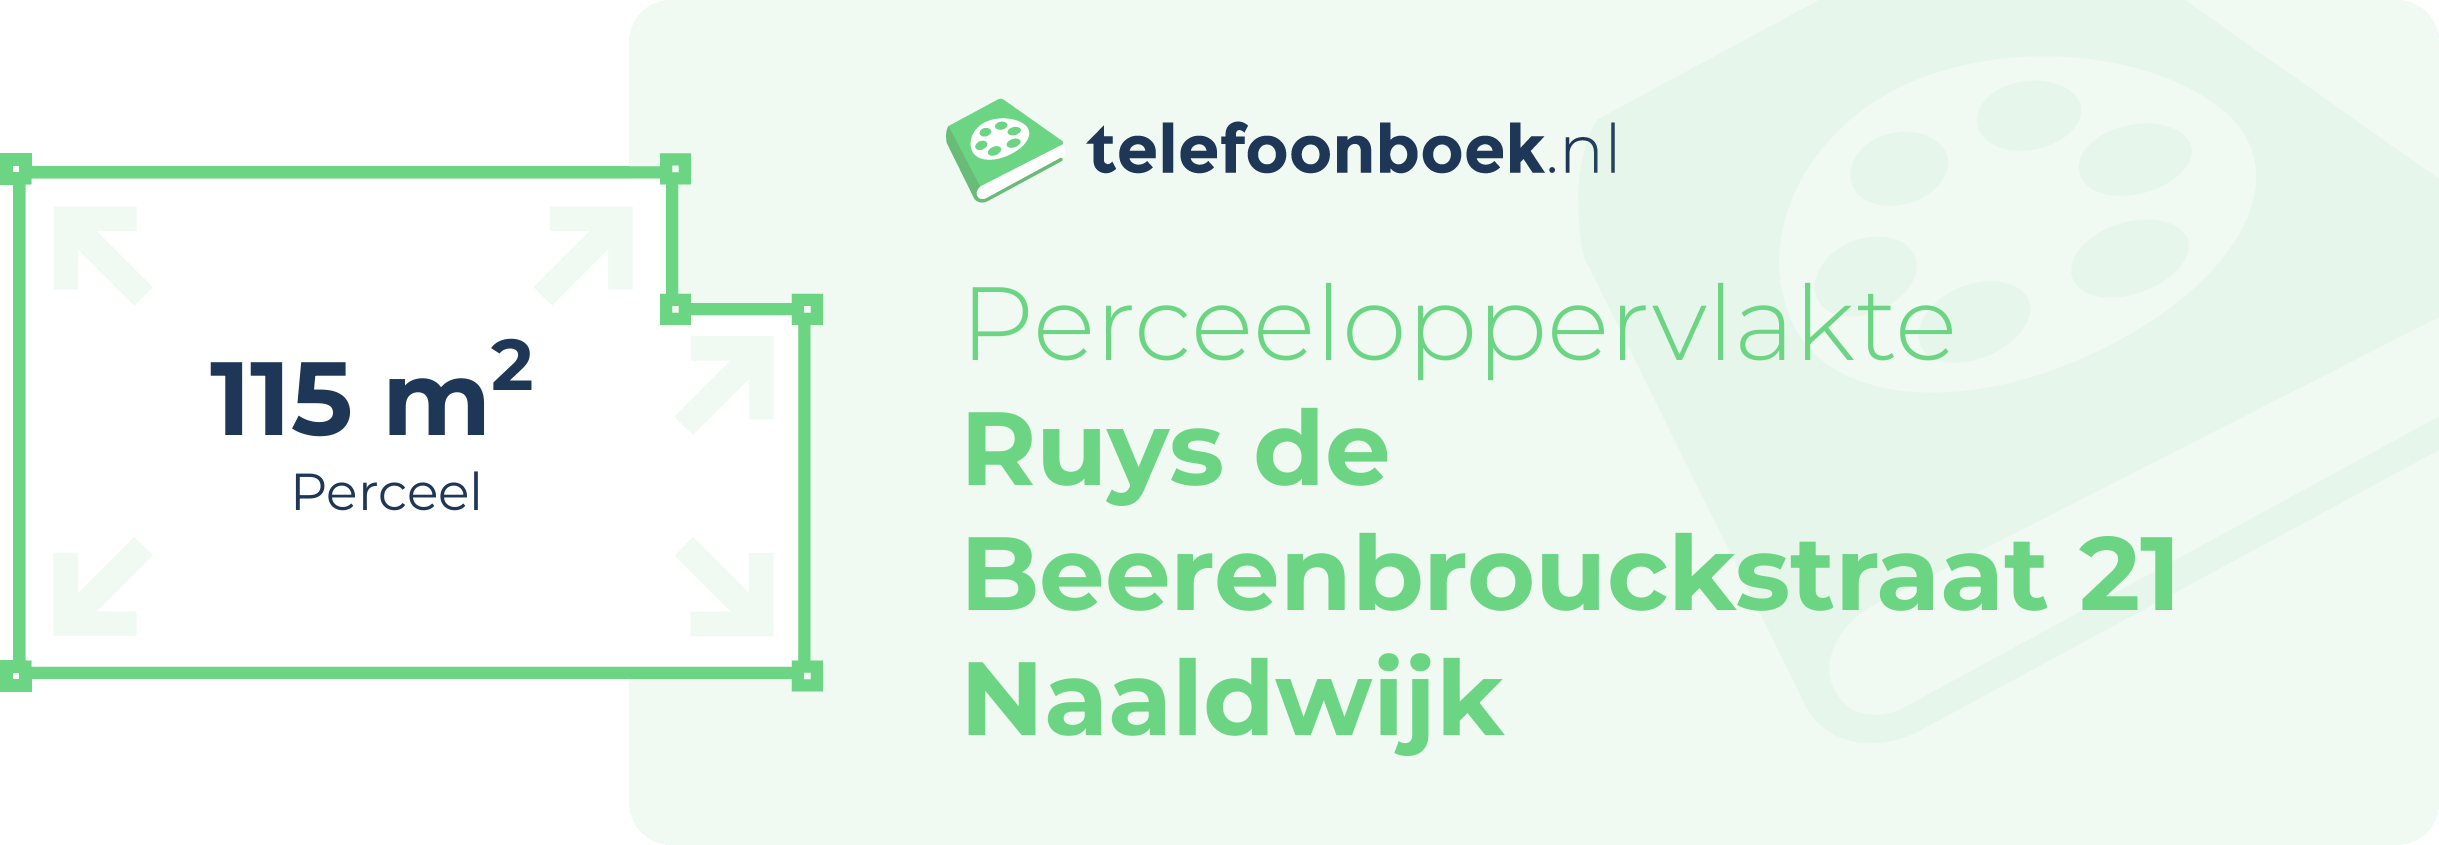 Perceeloppervlakte Ruys De Beerenbrouckstraat 21 Naaldwijk